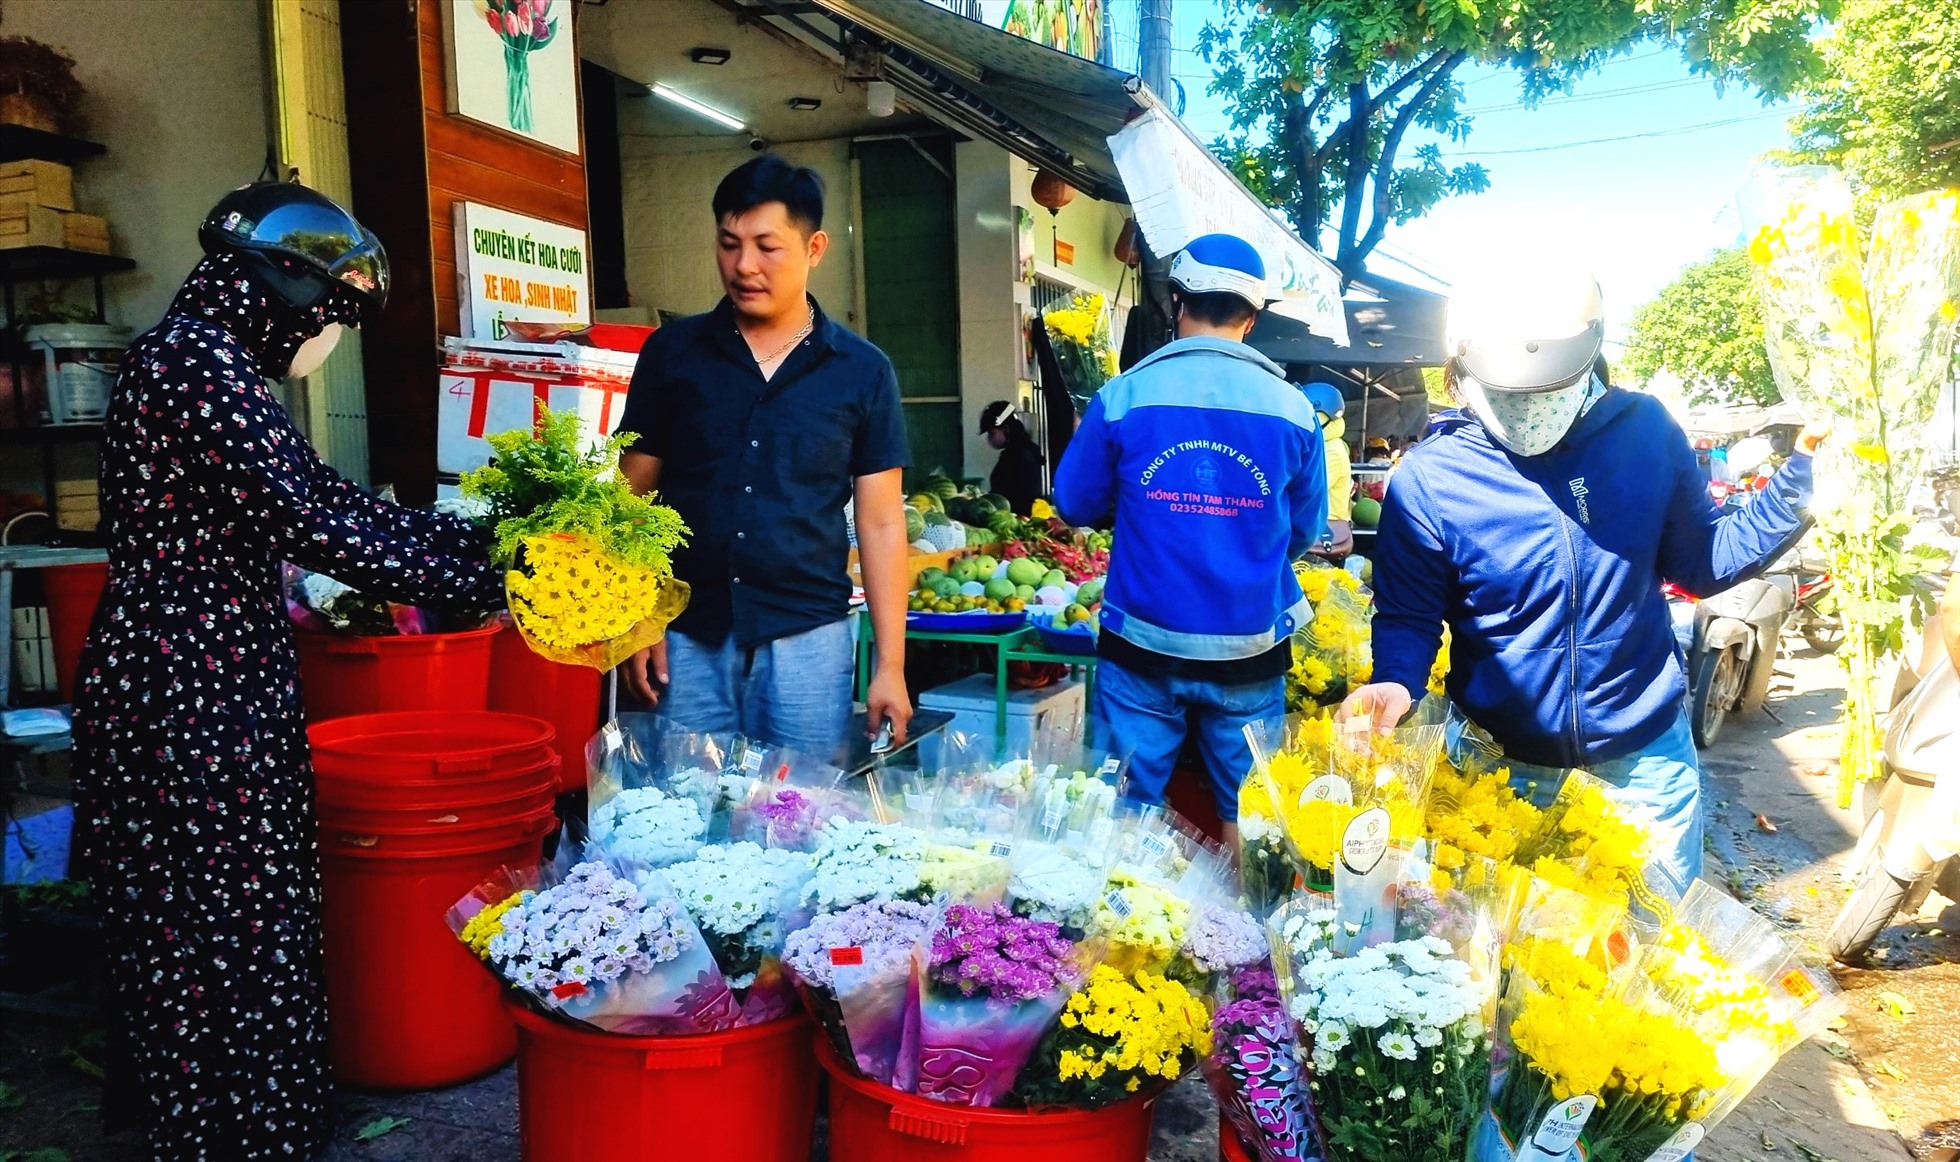 Một chủ cửa hàng hoa, trái cây ở chợ Thương mại TP. Tam Kỳ cho biết, nhiều mặt hàng hoa quả có giá bán rẻ hơn so với dịp Tết Đoan Ngọ những năm trước. như 1 bó hoa cúc lưới chỉ còn 50.000/bó so với giá 70.000 - 90.000/bó các năm trước.